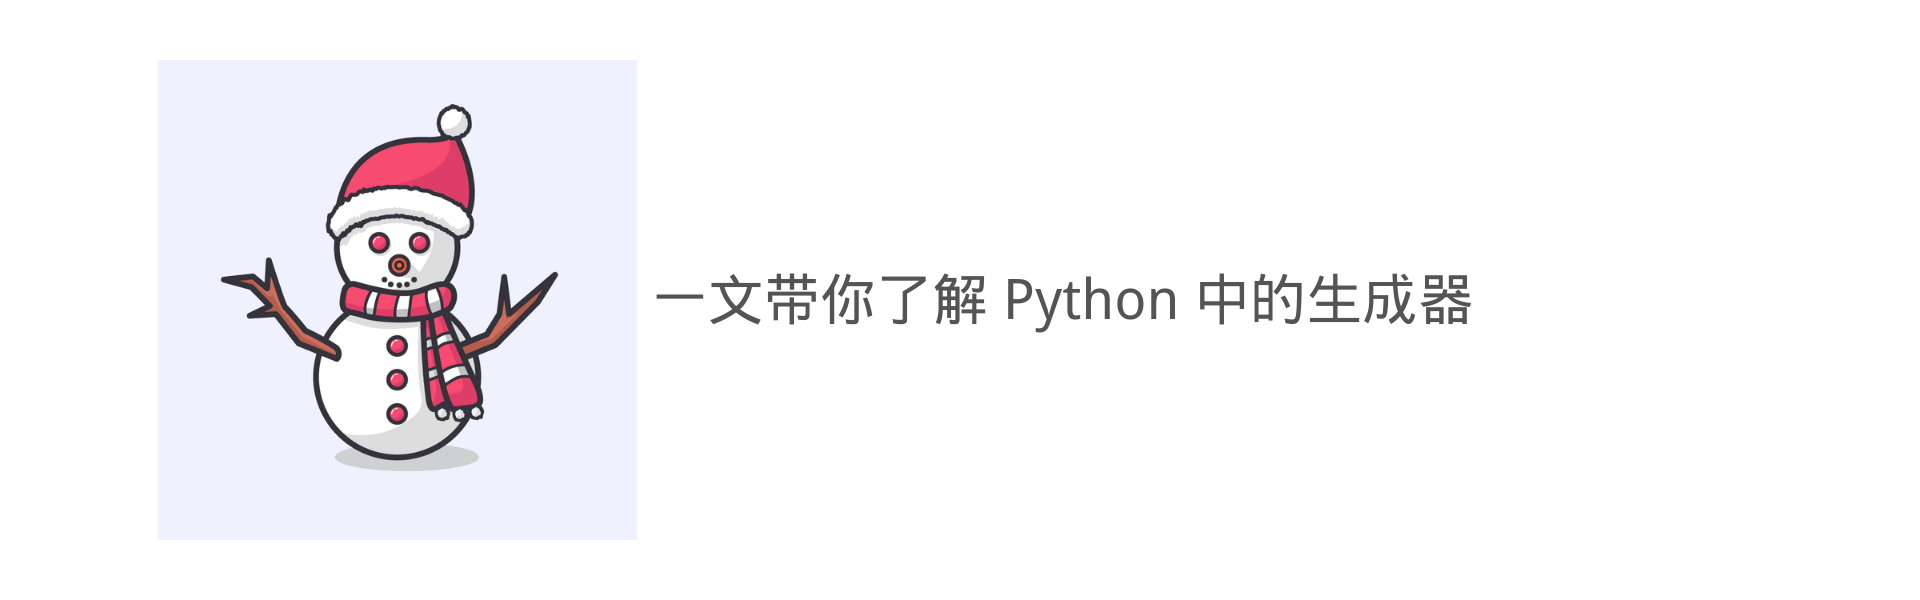 一文带你了解 Python 中的生成器